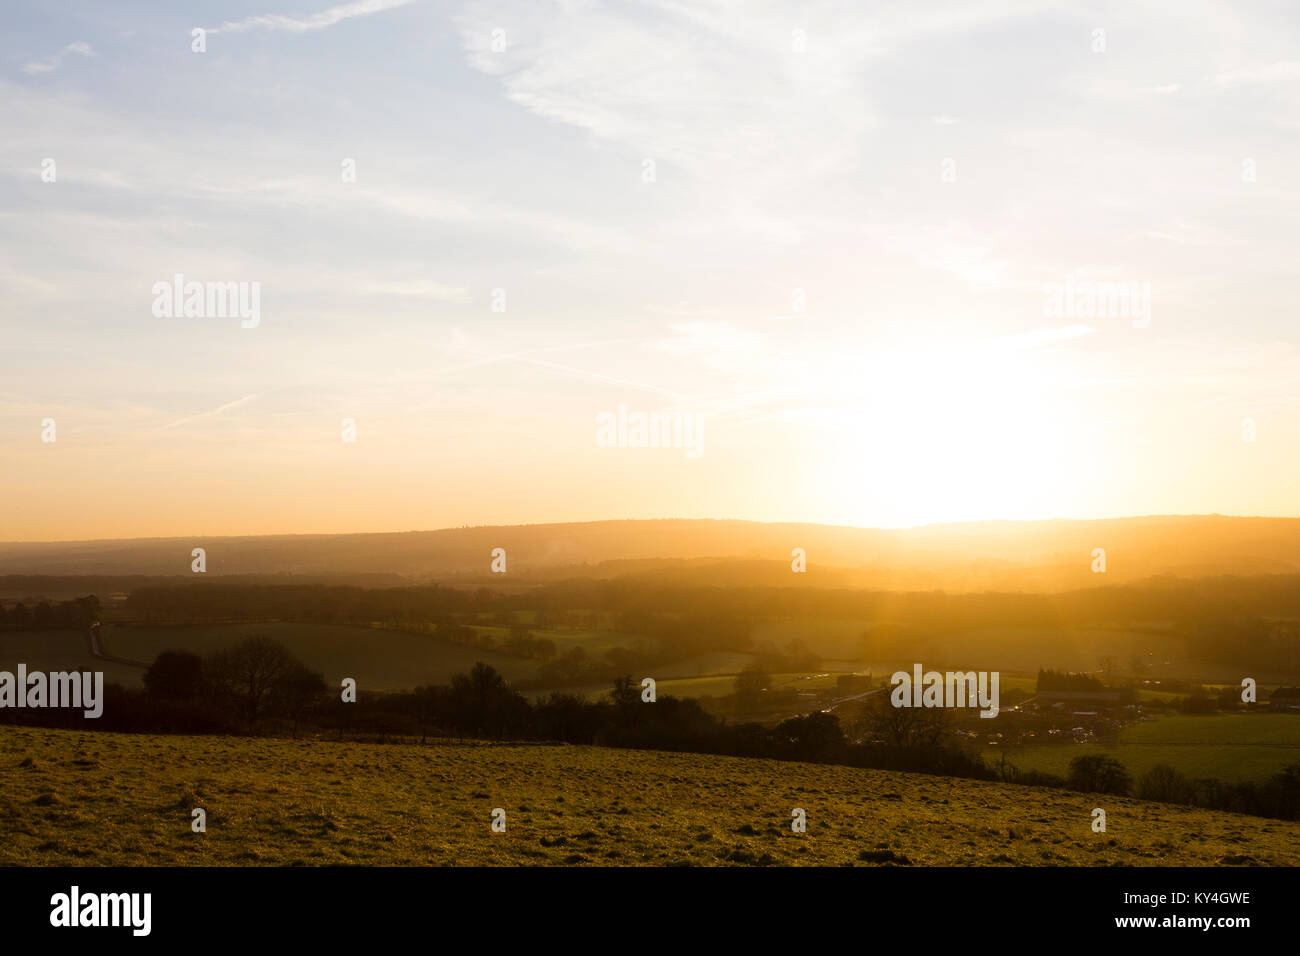 Titsey, UK. Die Sonne beleuchtet die Felder und Bauernhöfe von North Surrey gegen einen hellblauen Himmel. Stockfoto